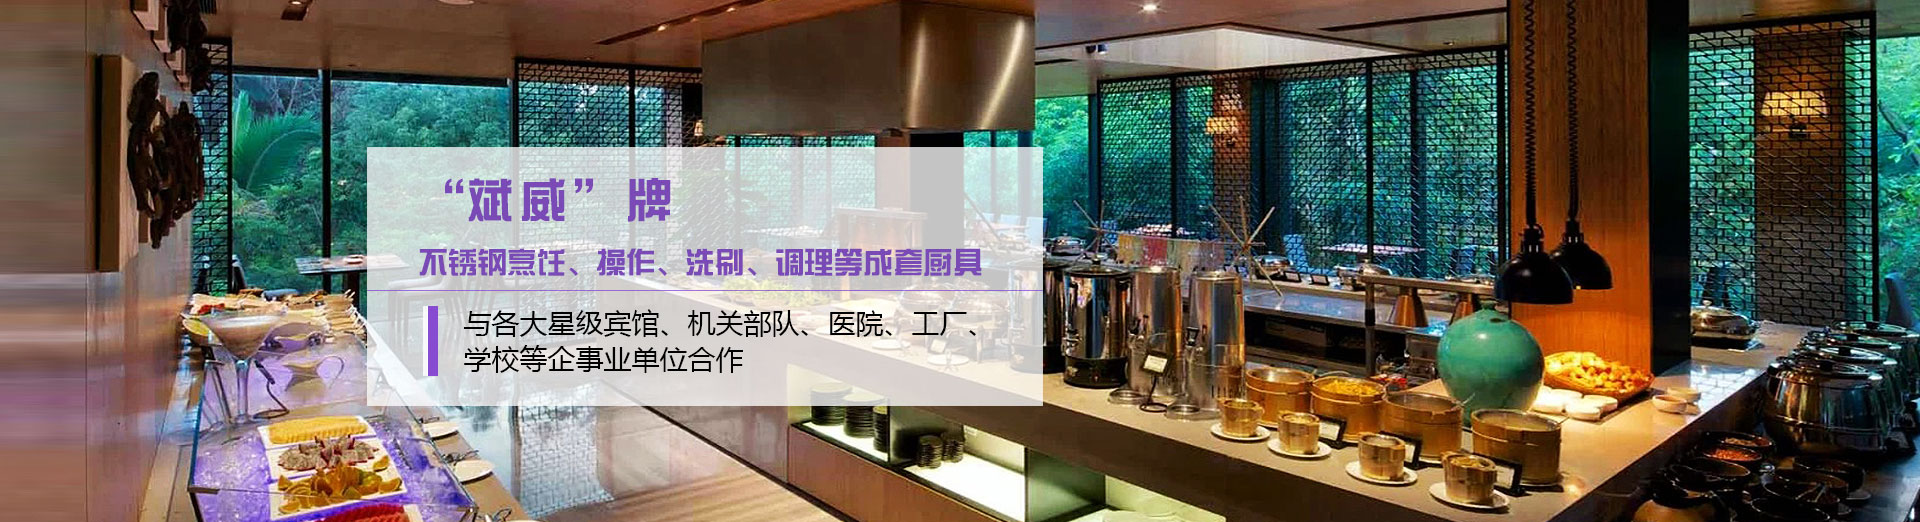 上海斌威酒店成套设备工程有限公司